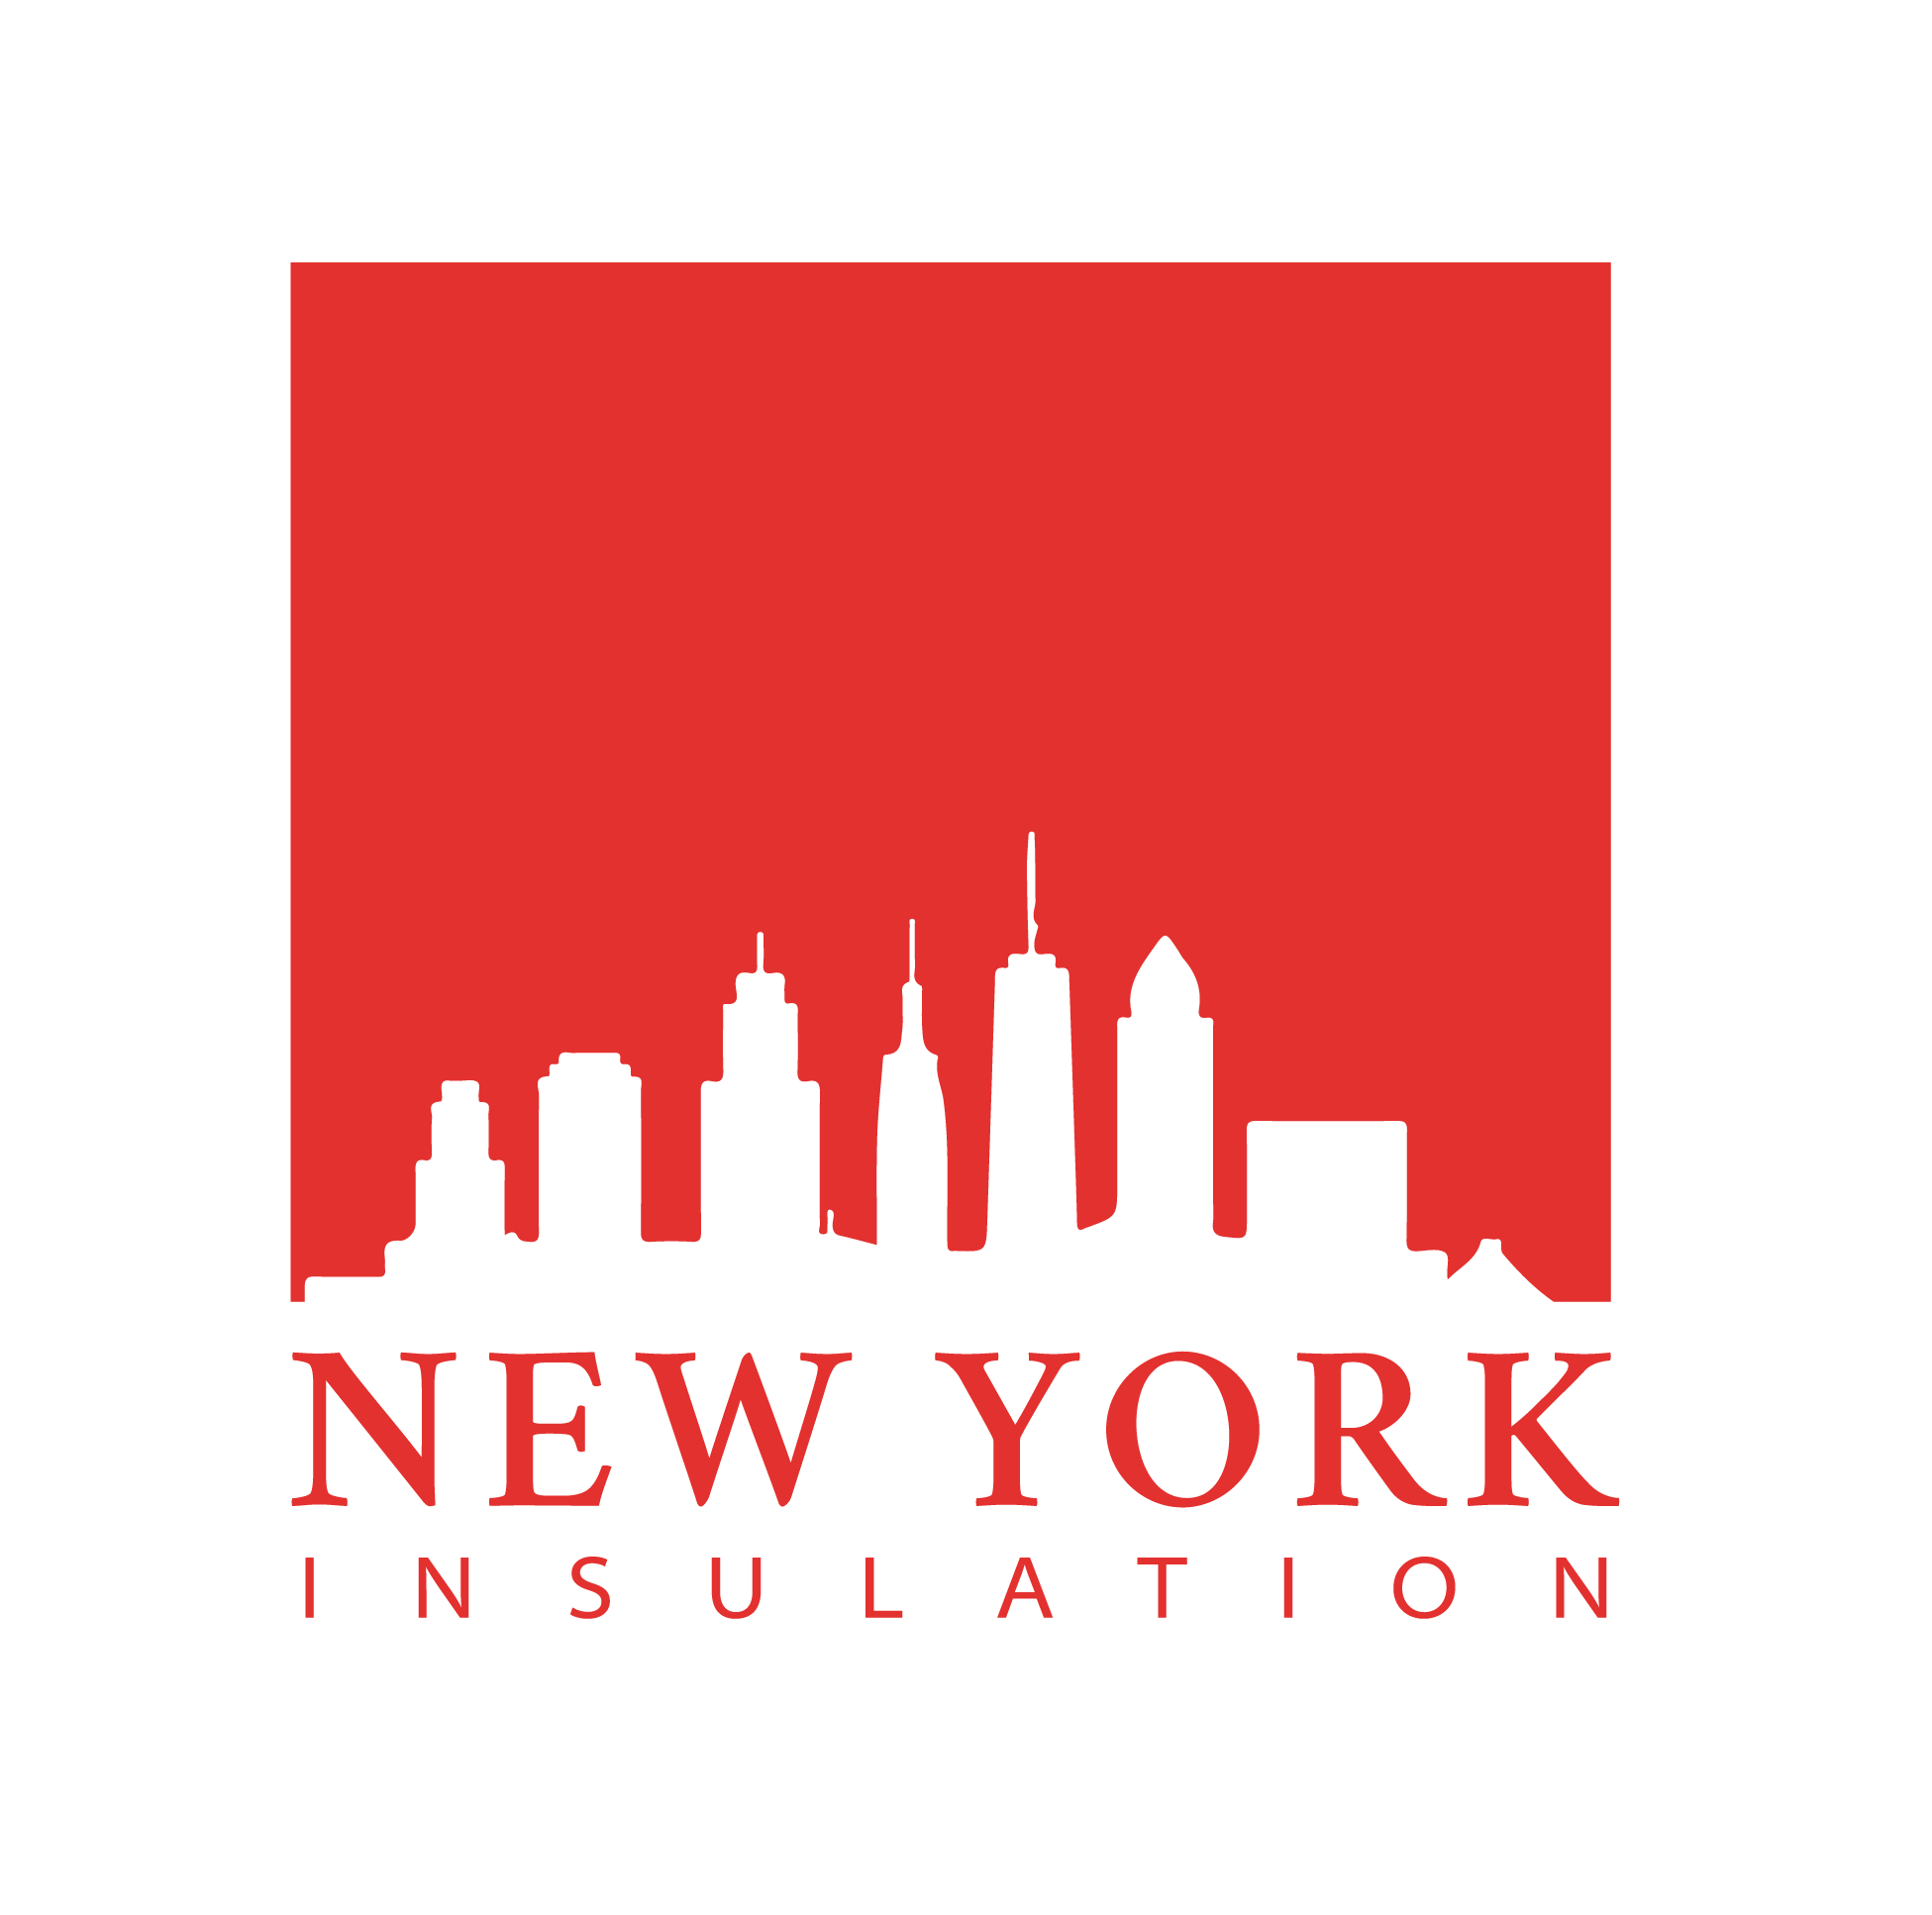 NY Insulation